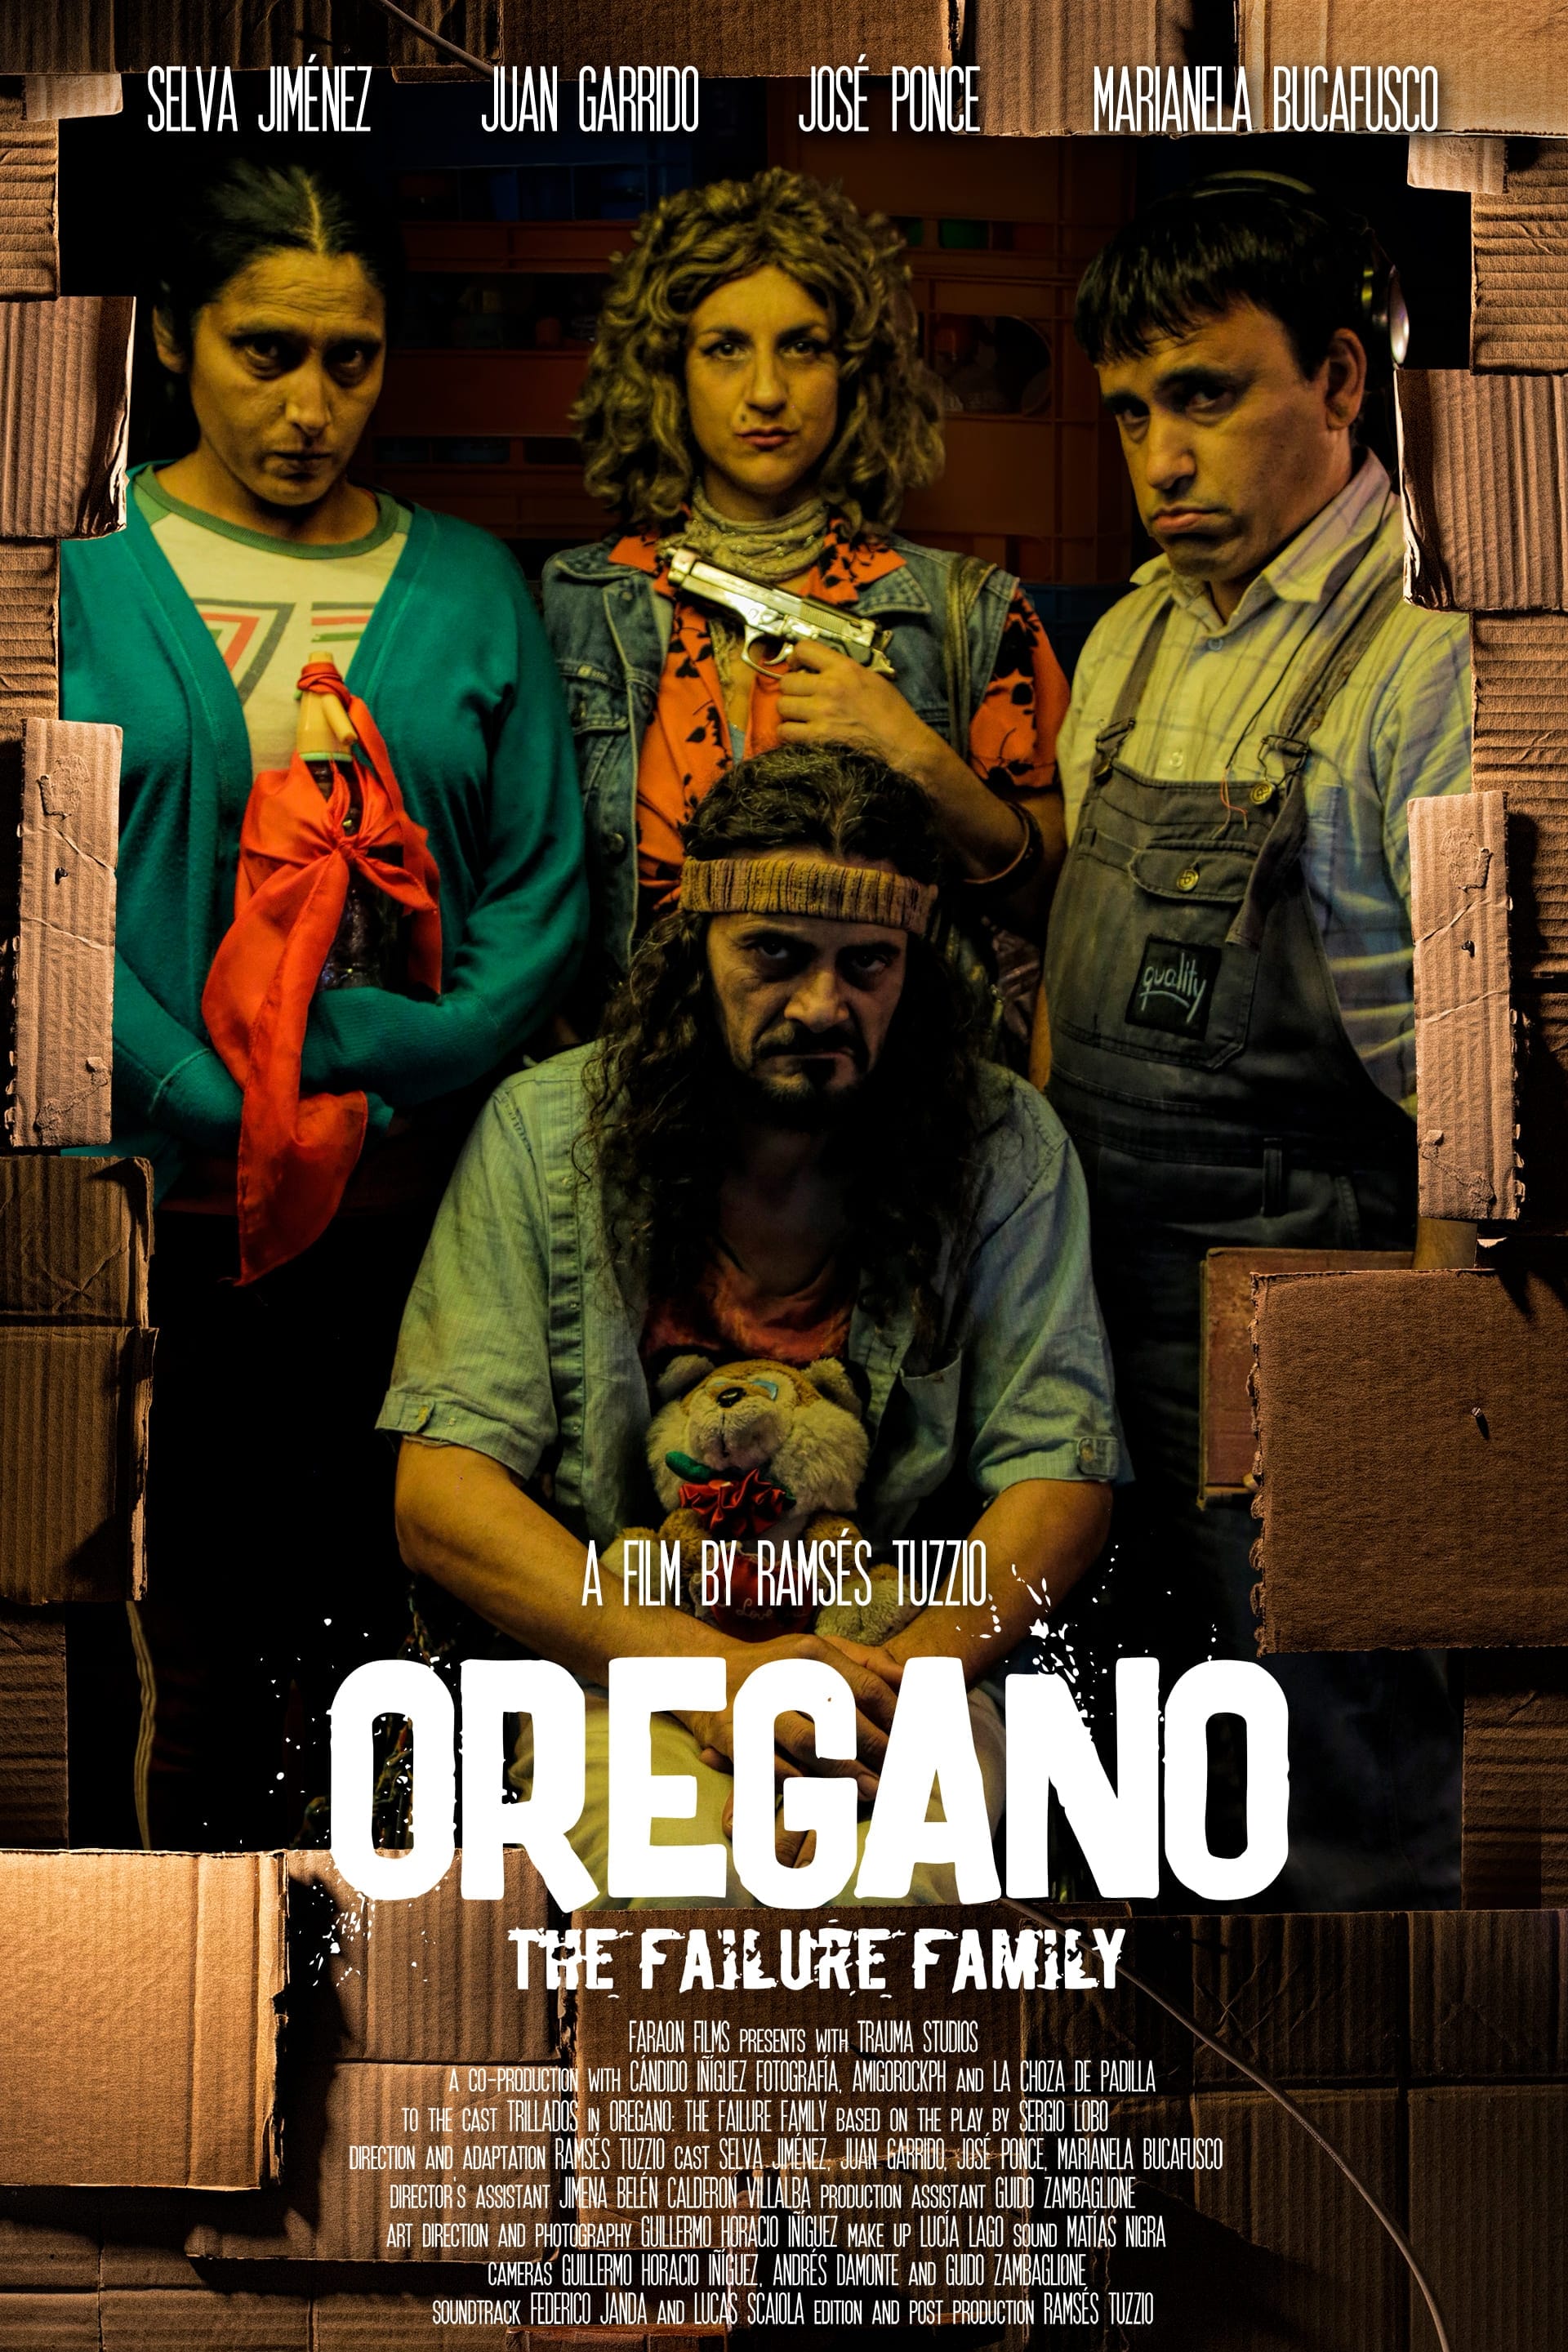 Oregano: The Failure Family